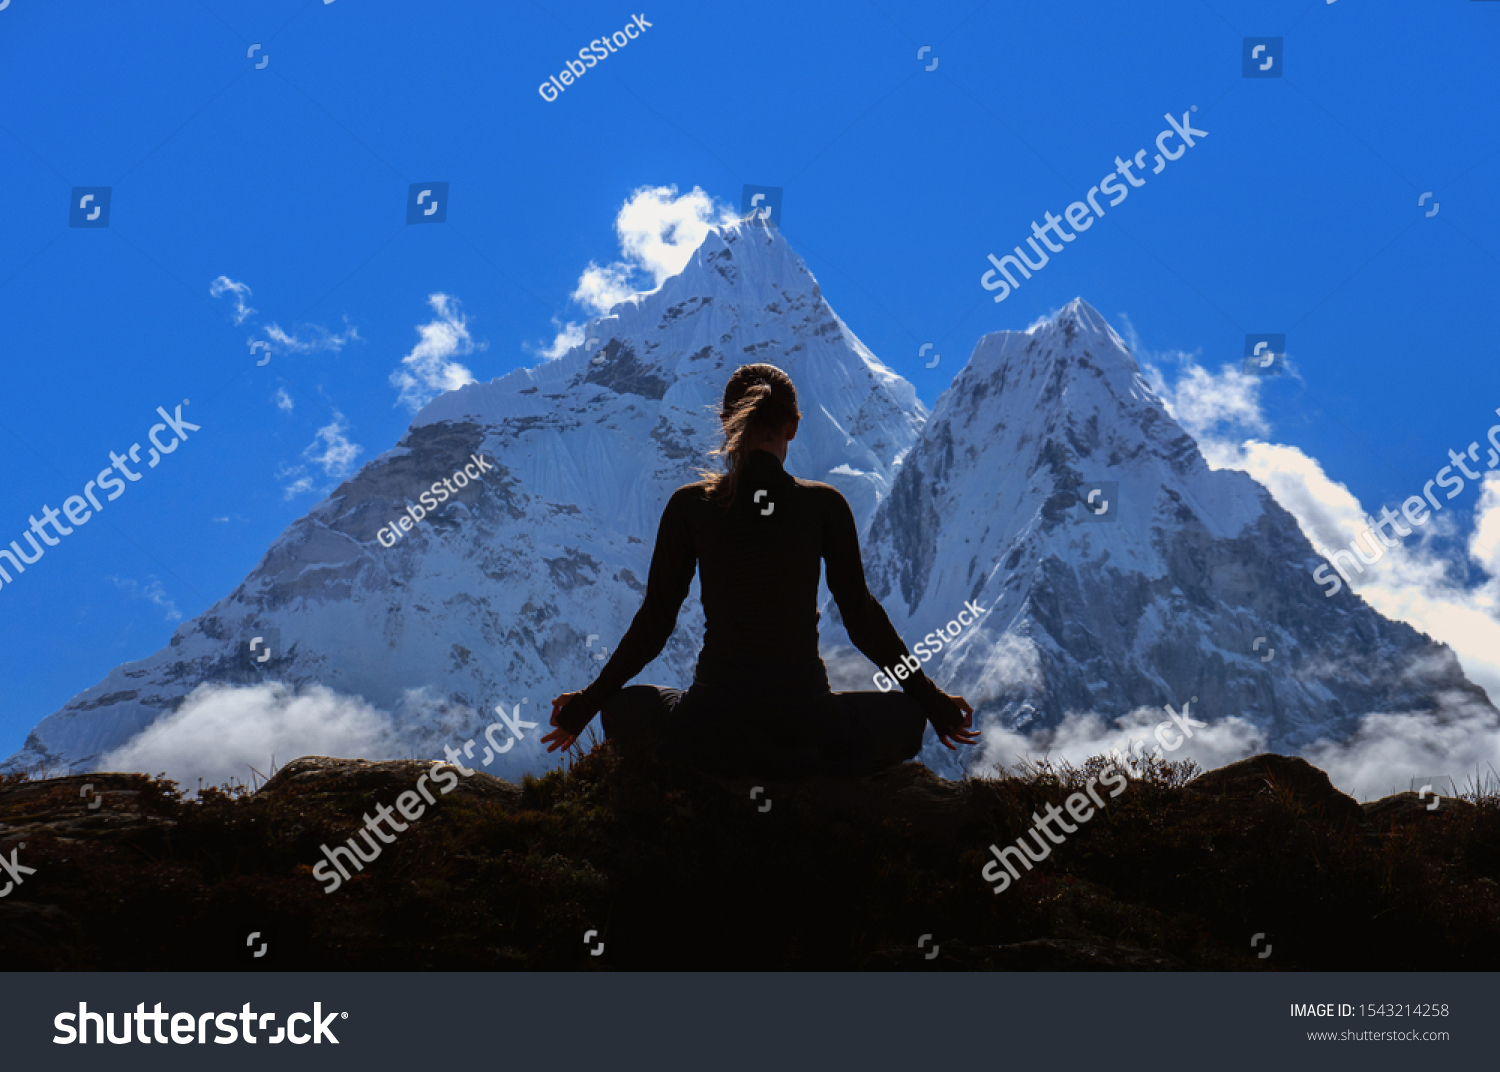 Himalayas meditation Images, Stock Photos & Vectors Shutterstock